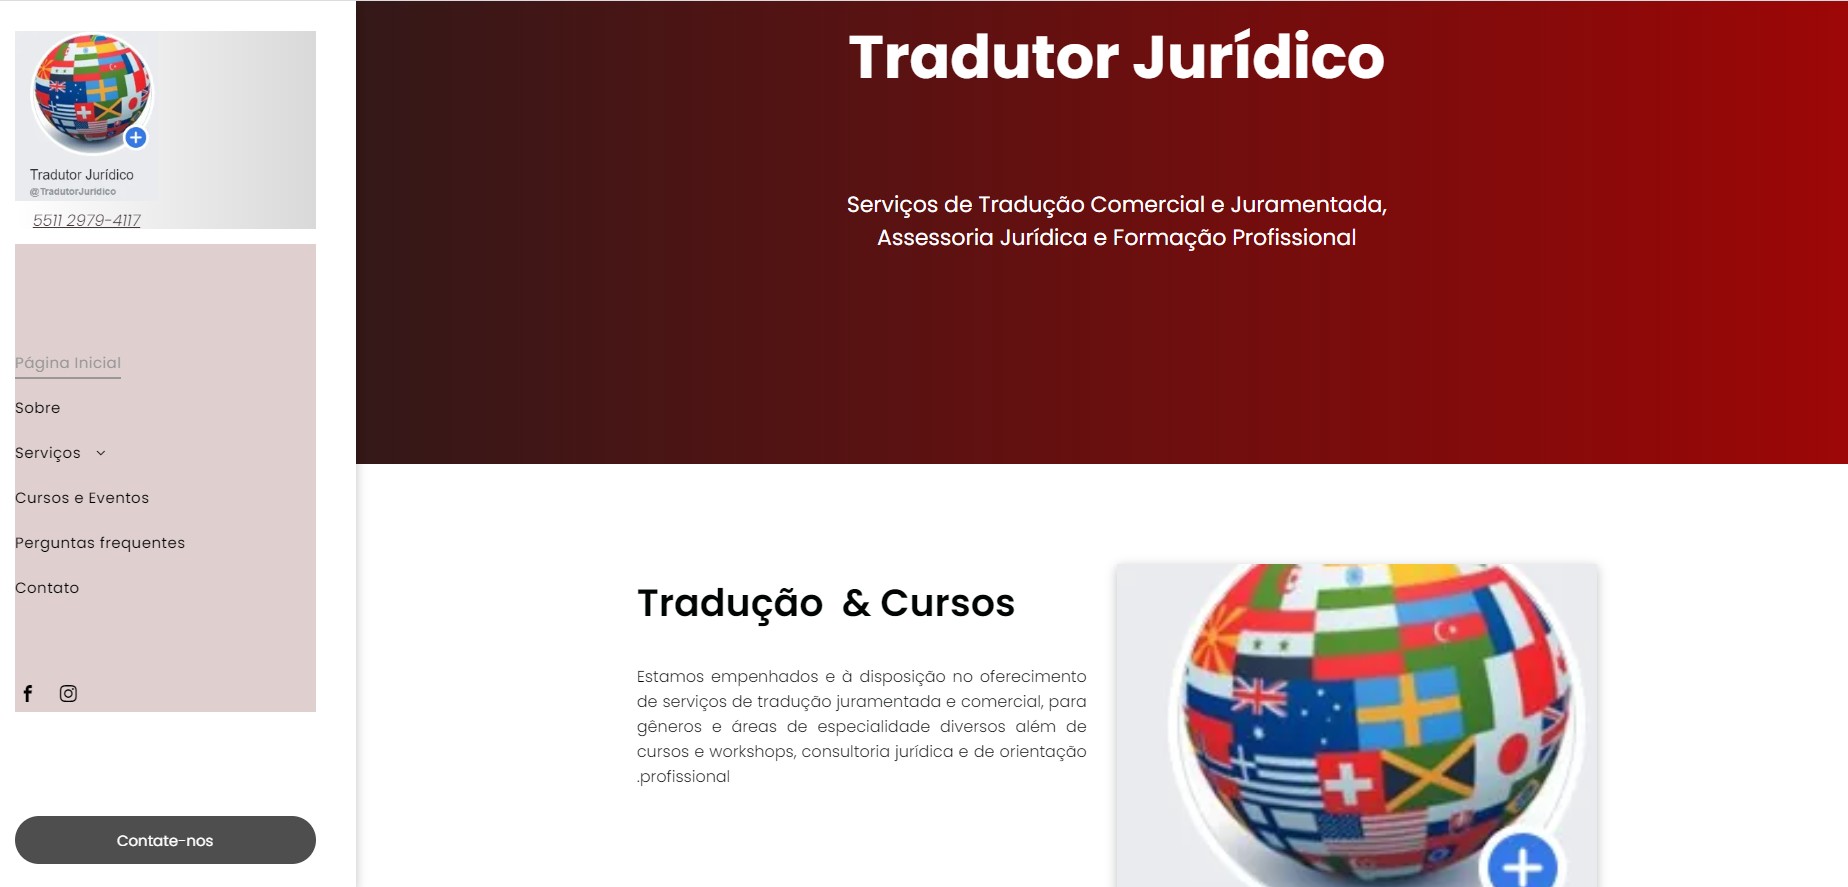 O perfil profissional dos tradutores e intérpretes no Brasil